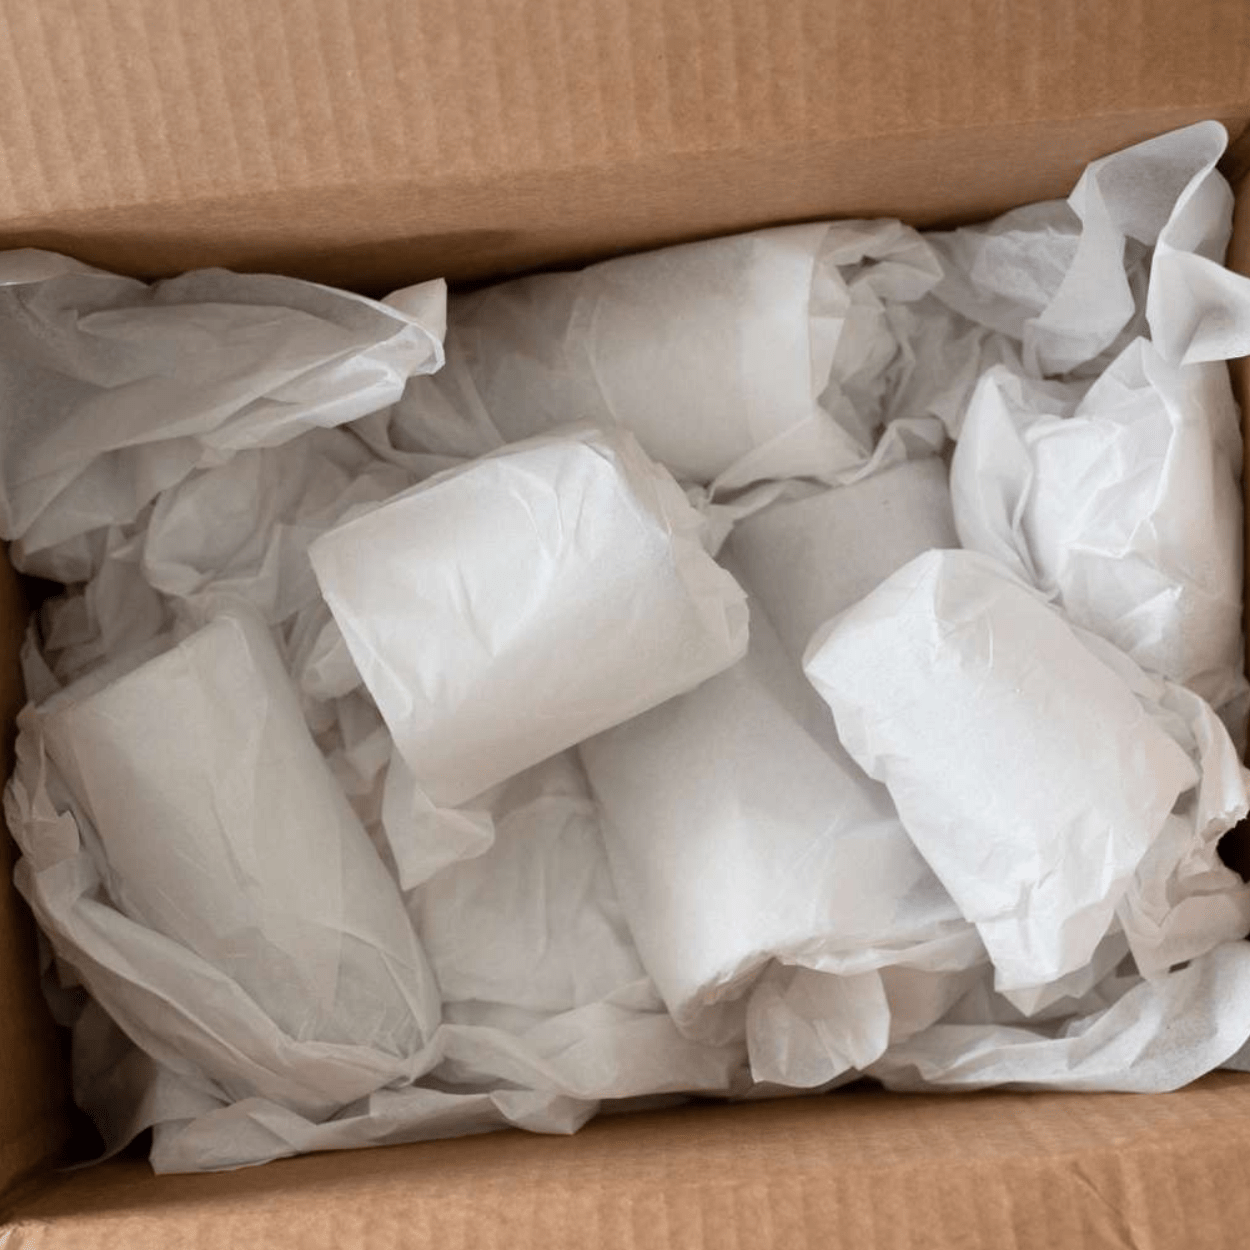 20 x 30 #4 Off-White Tissue Paper (Bulk Pack) #MF - GBE Packaging